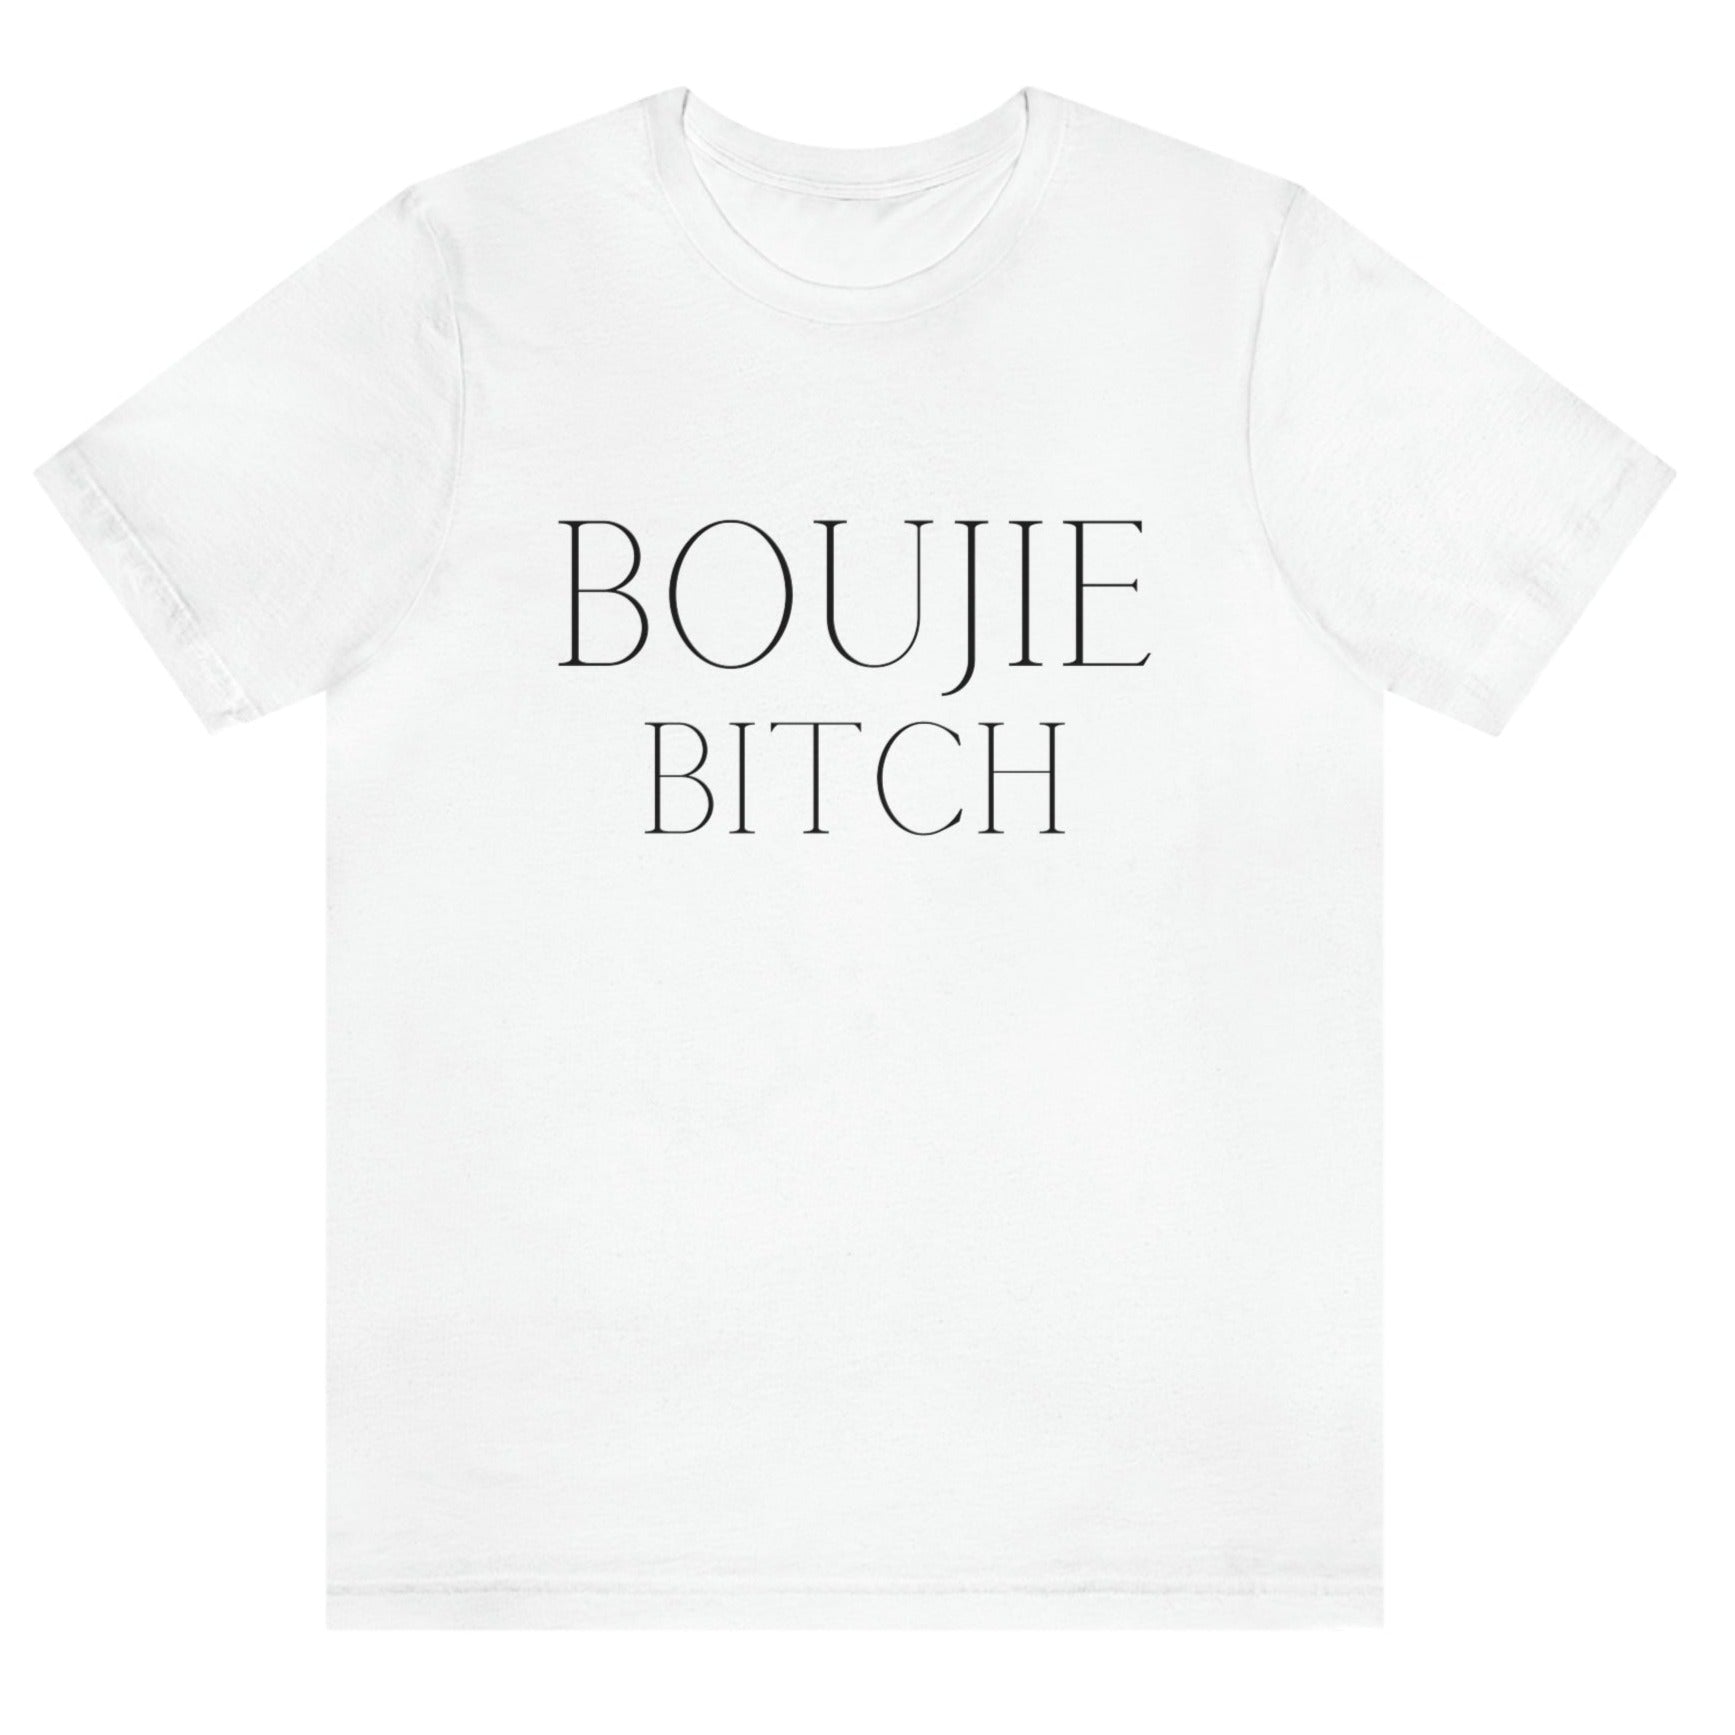 boujie-bitch-bourgeois-white-t-shirt-womens